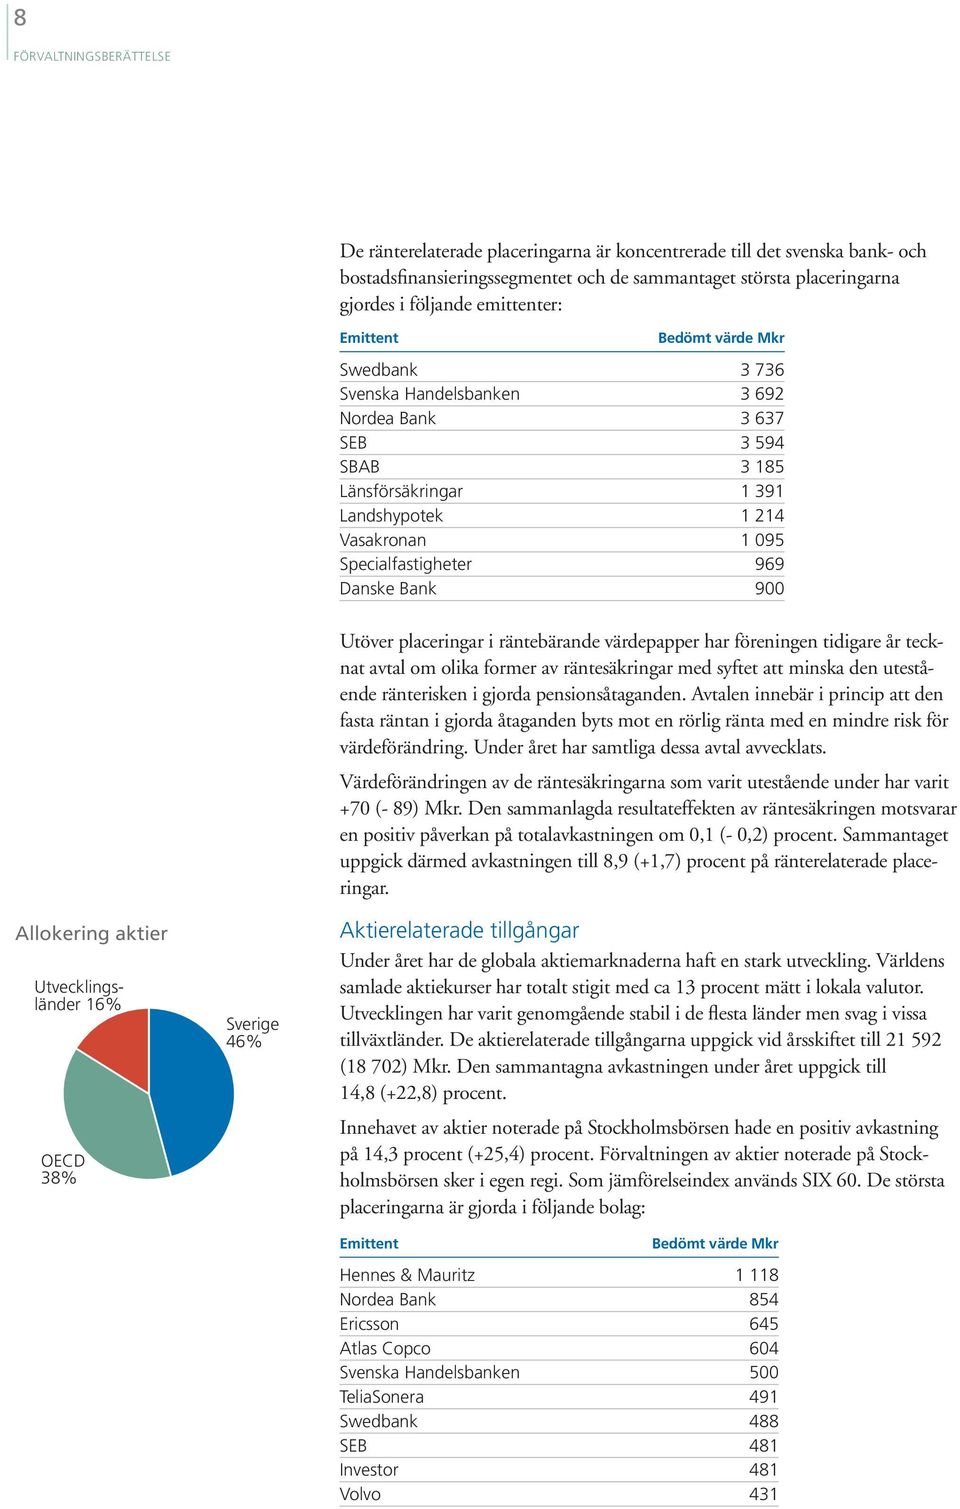 969 Danske Bank 900 Allokering aktier Utvecklingsländer 16% OECD 38% Sverige 46% Utöver placeringar i räntebärande värdepapper har föreningen tidigare år tecknat avtal om olika former av